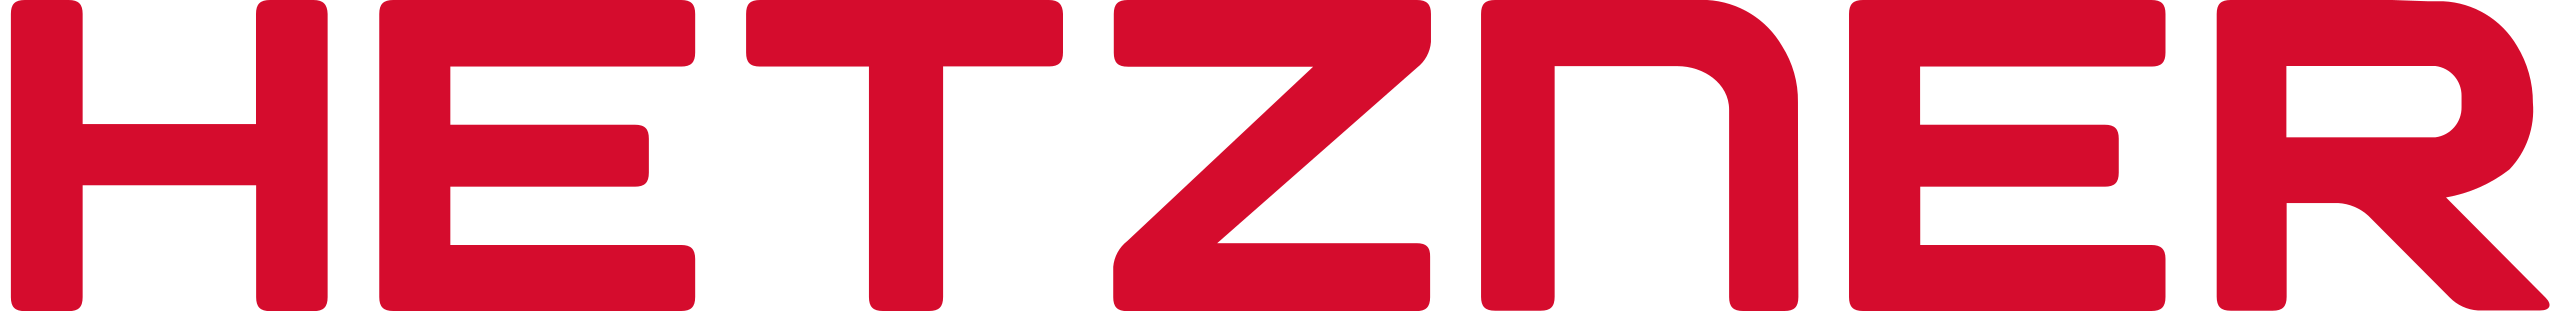 Logo_Hetzner.svg.png